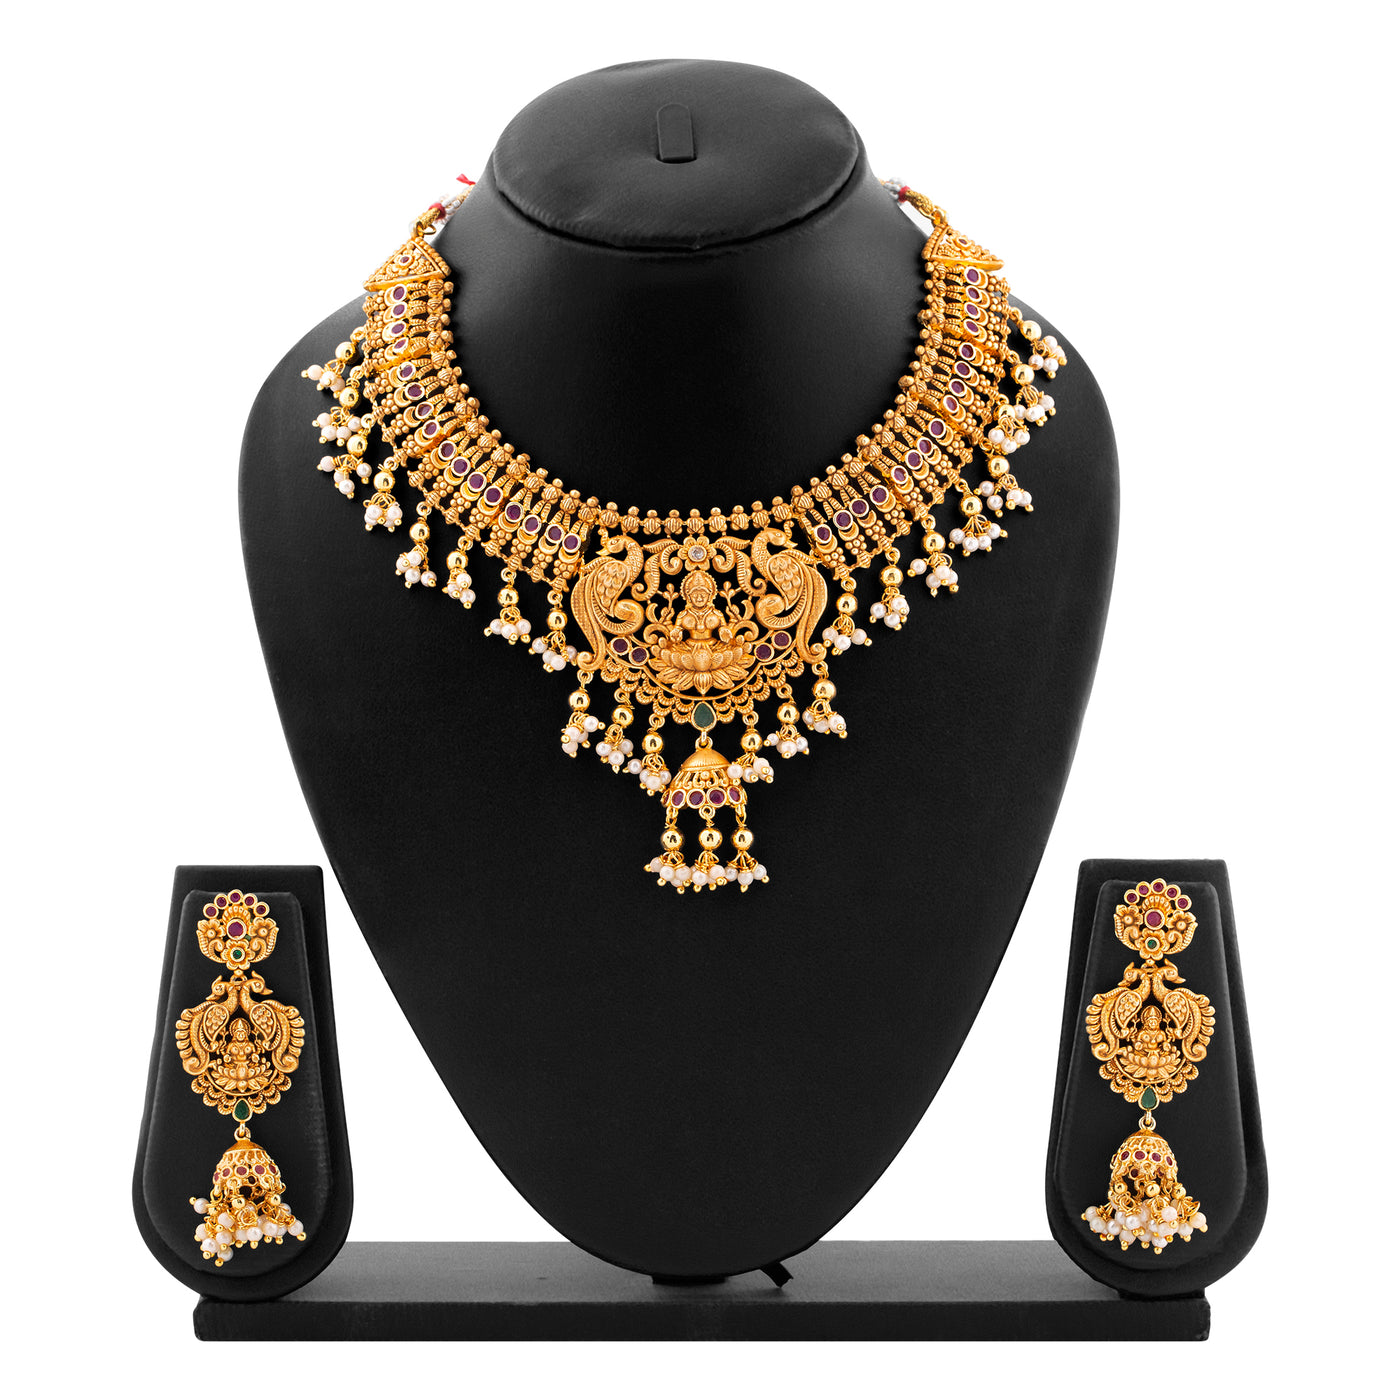 Estele Gold plated Divine Lakshmi Ji Temple Necklace set with color stones & Pearls